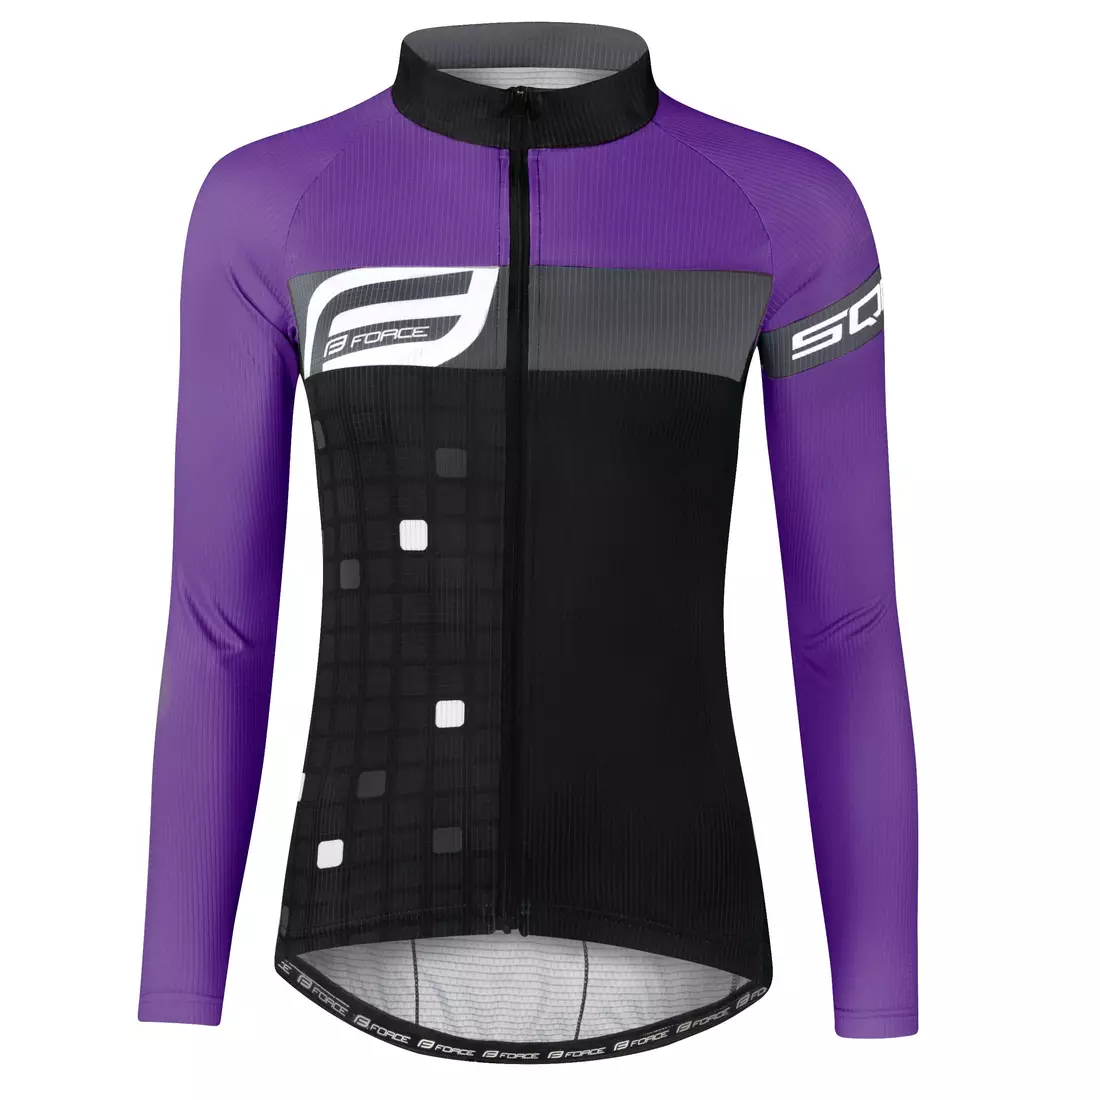 FORCE dámský cyklistický dres SQUARE LADY black/purple 9001433